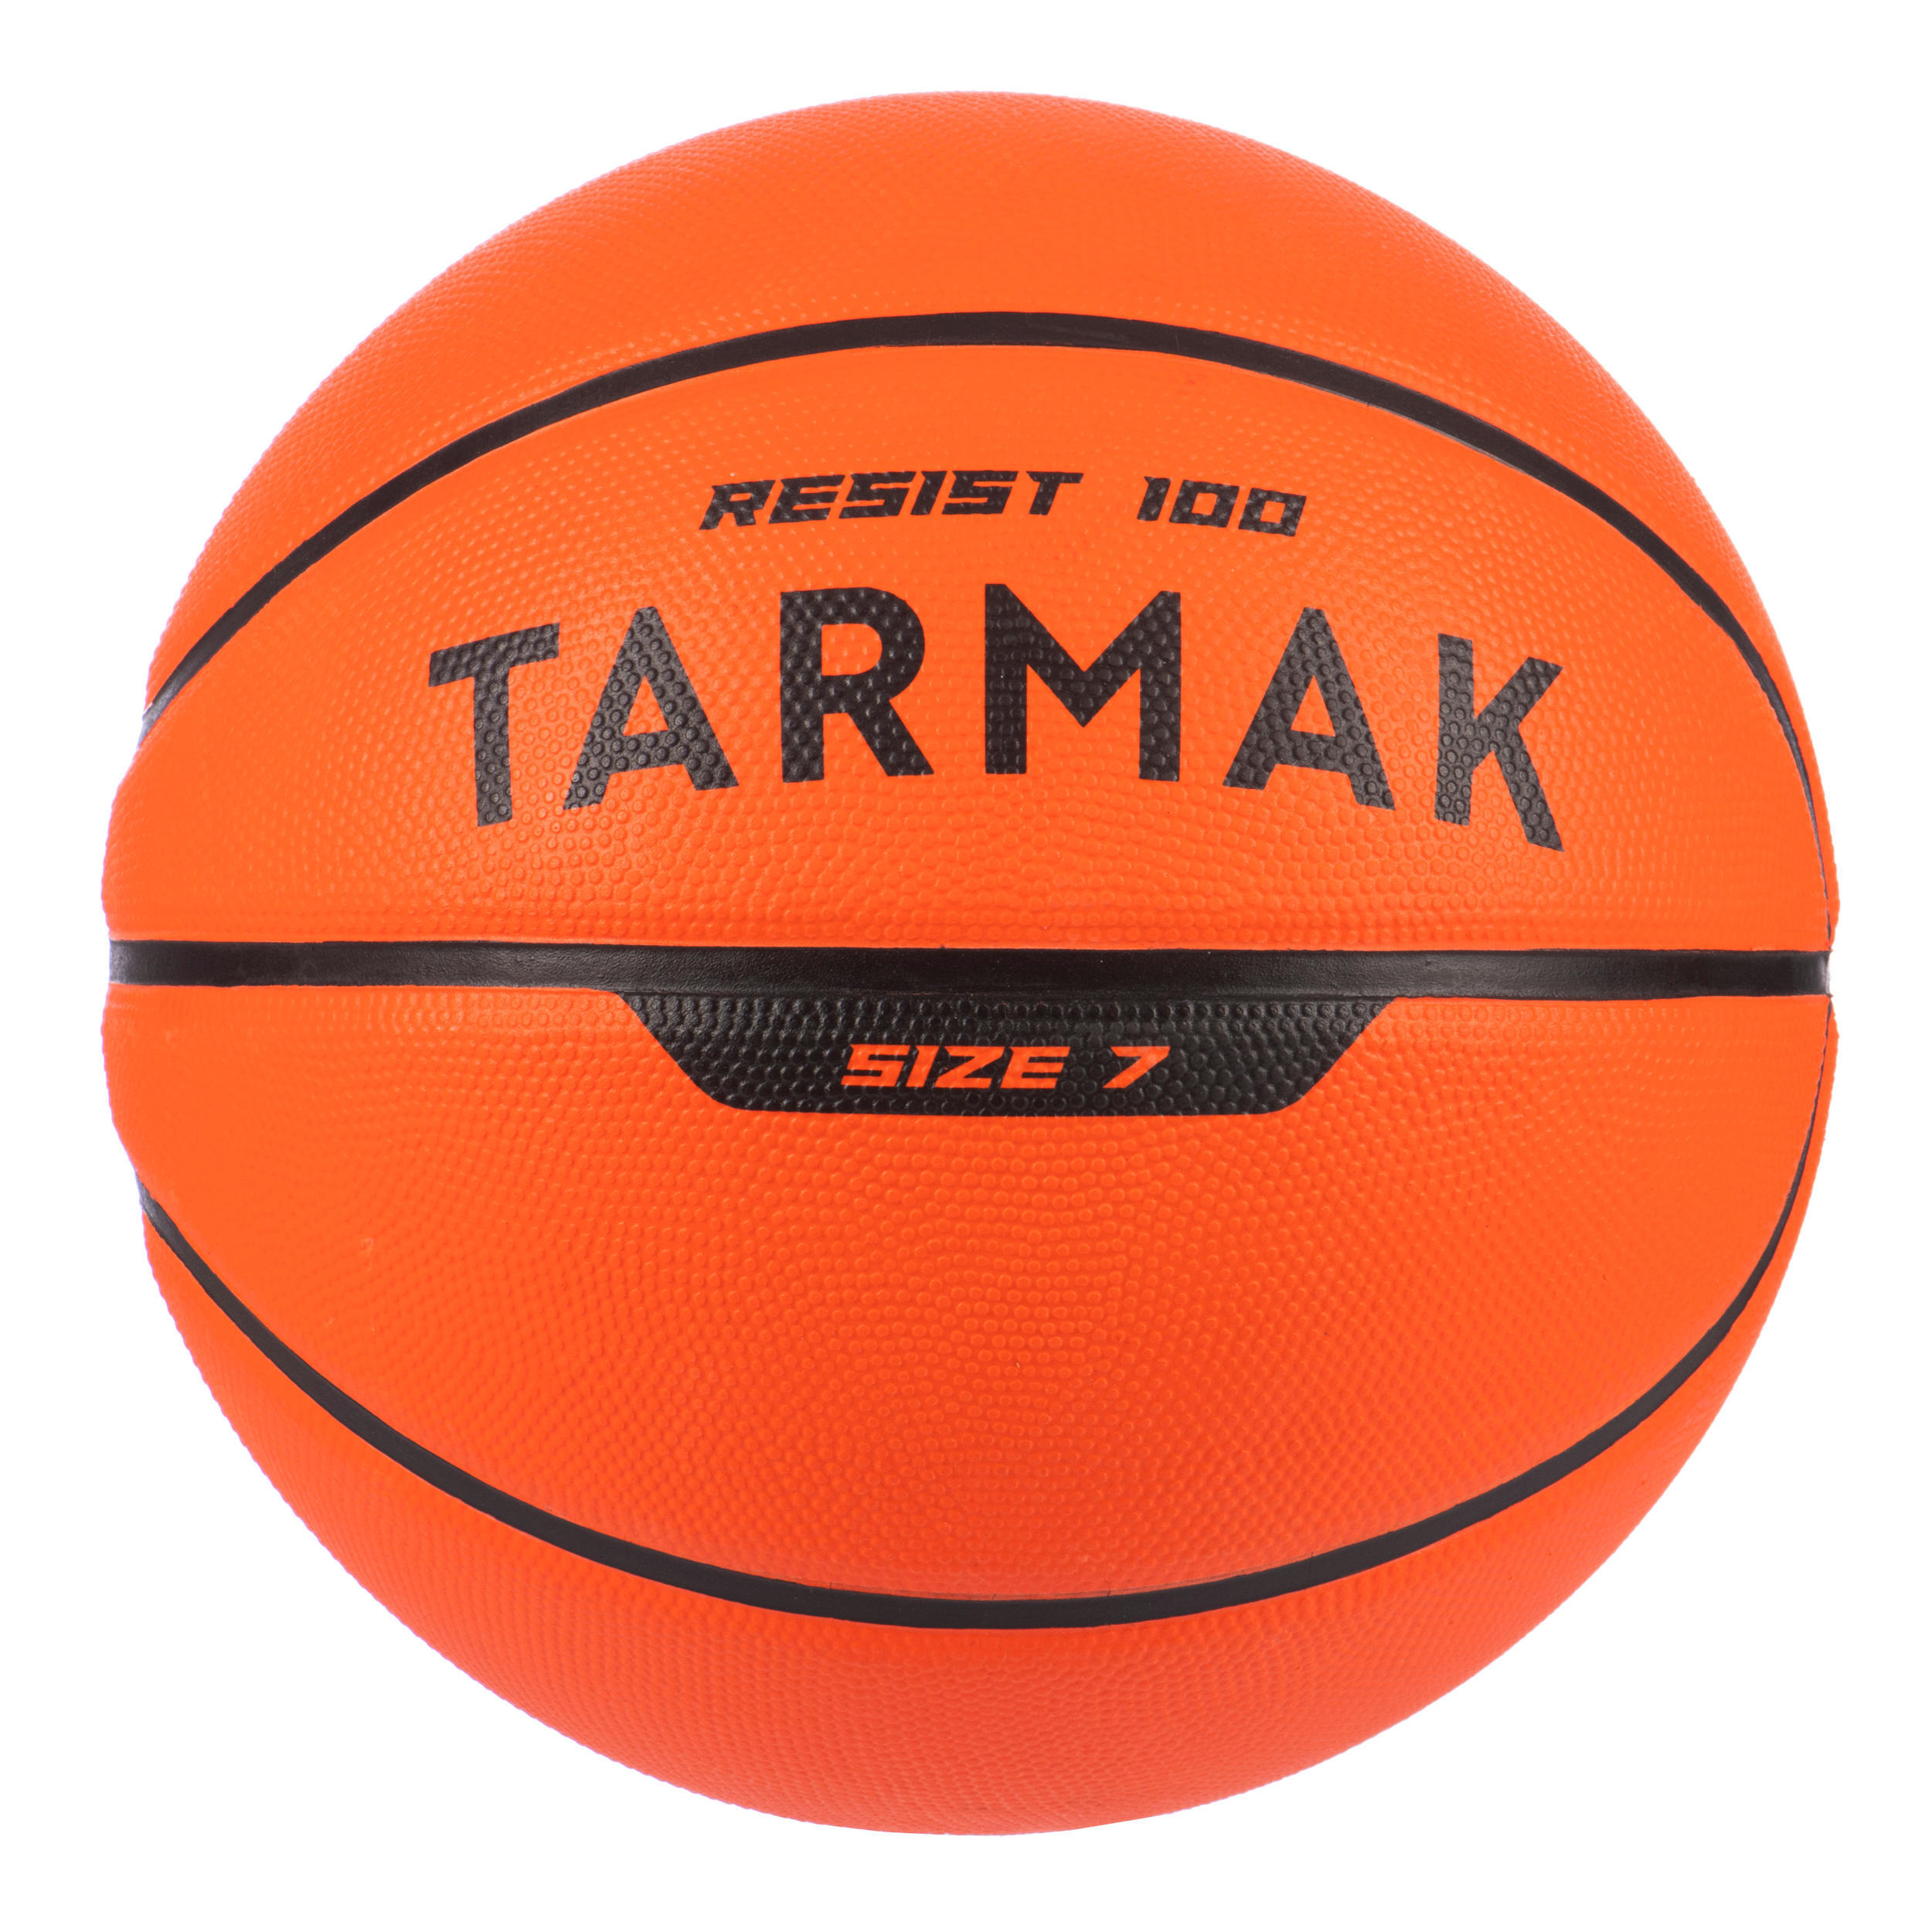 Мяч баскетбольный R100 размер 7 детский/взрослый оранжевый TARMAK, Королек пиковый баскетбольный мяч 7 искусственная кожа износостойкий мяч для тренировок в помещении и на улице для взрослых и молодежи